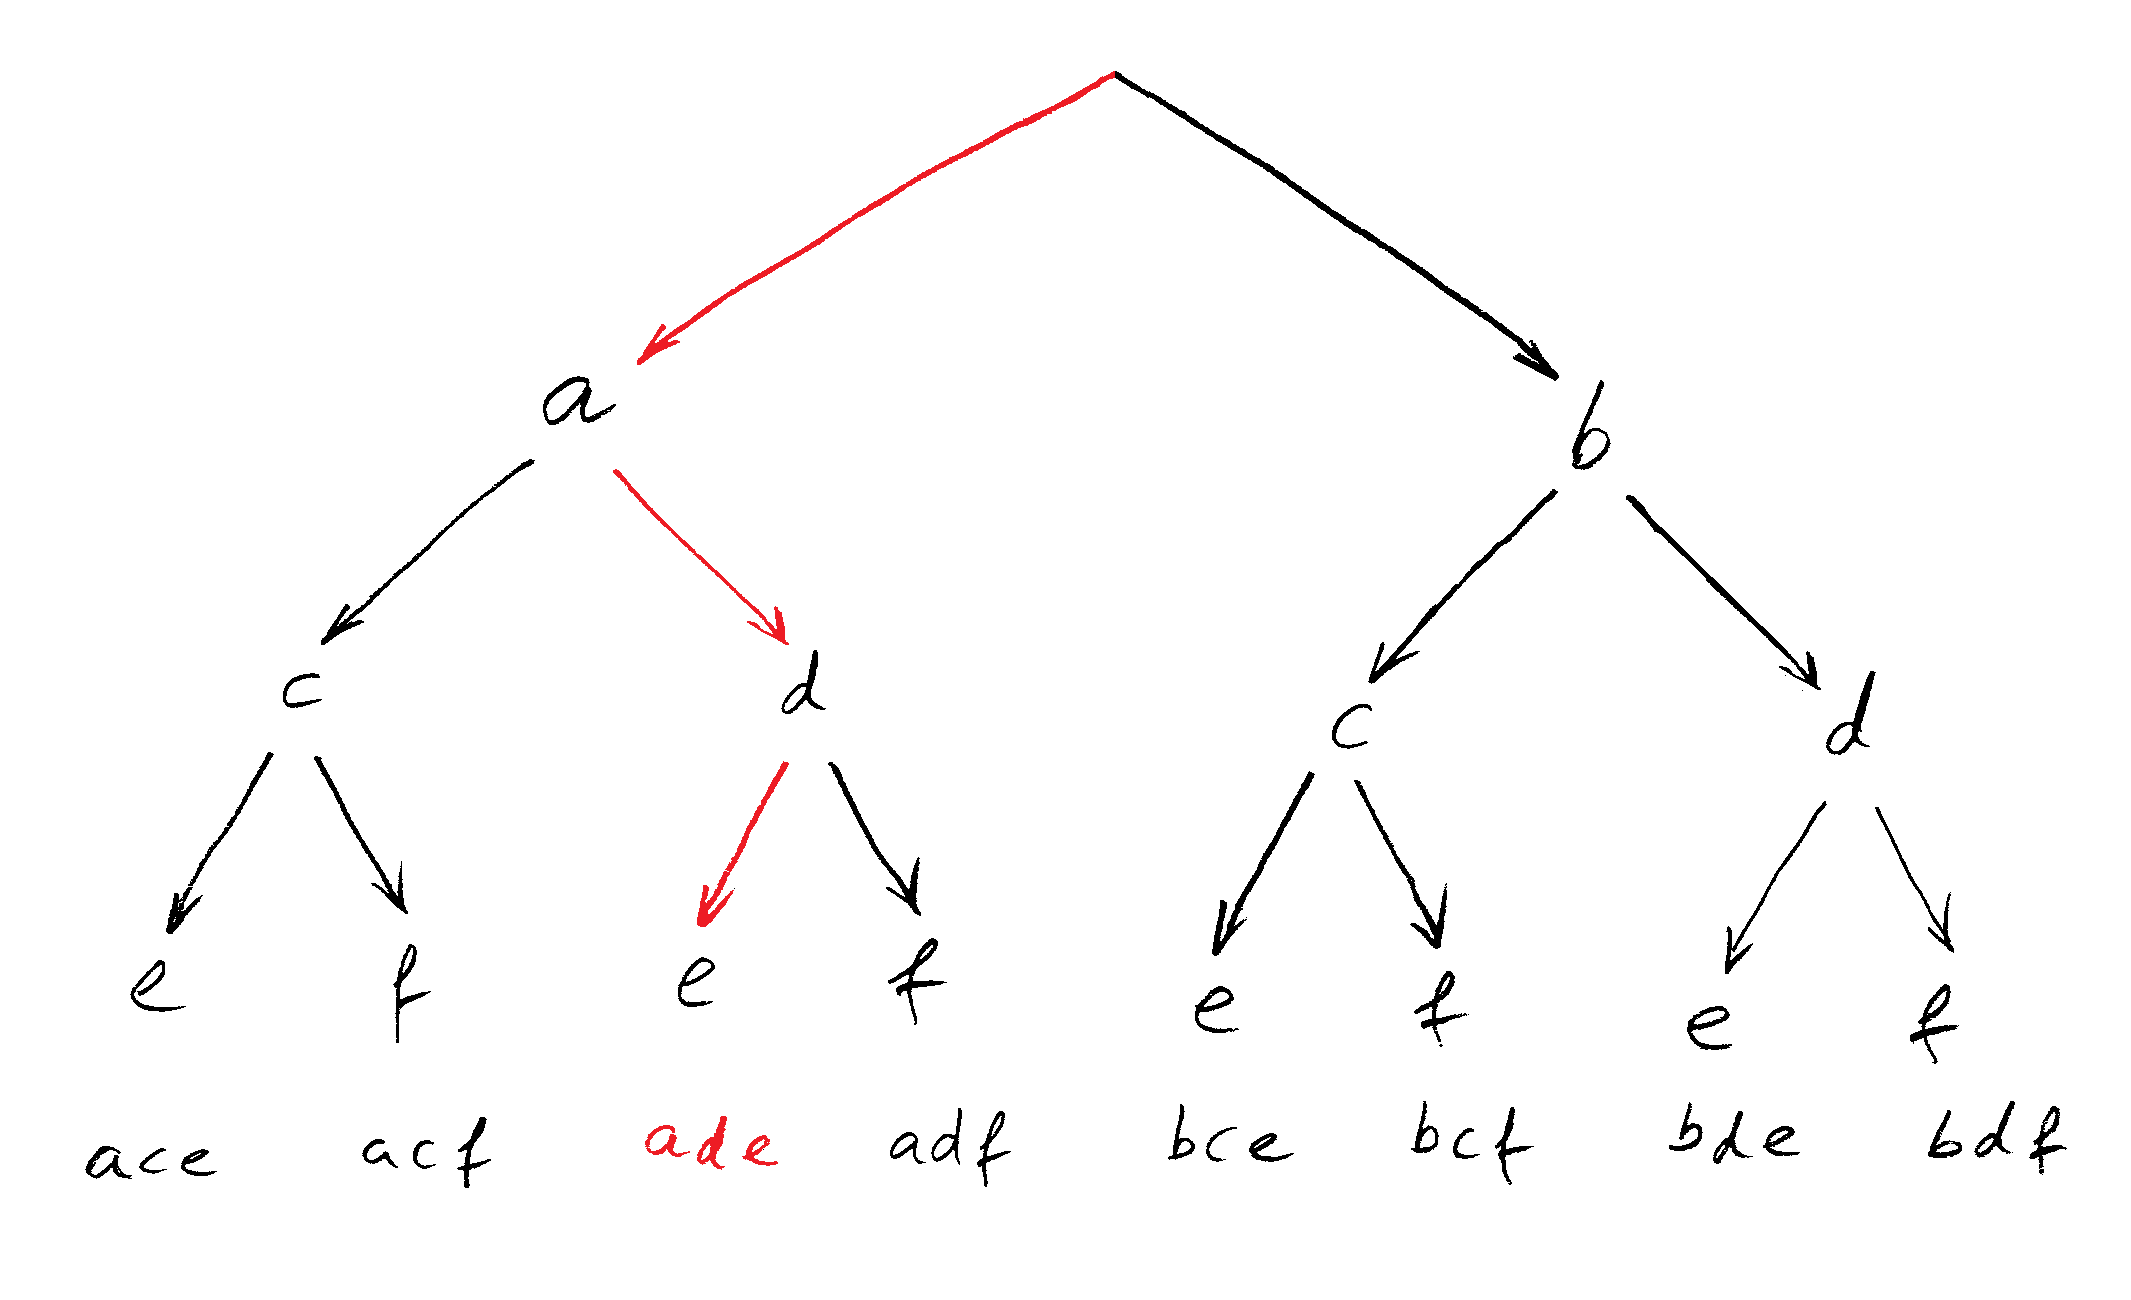 Baum-Schema für das erste Beispiel